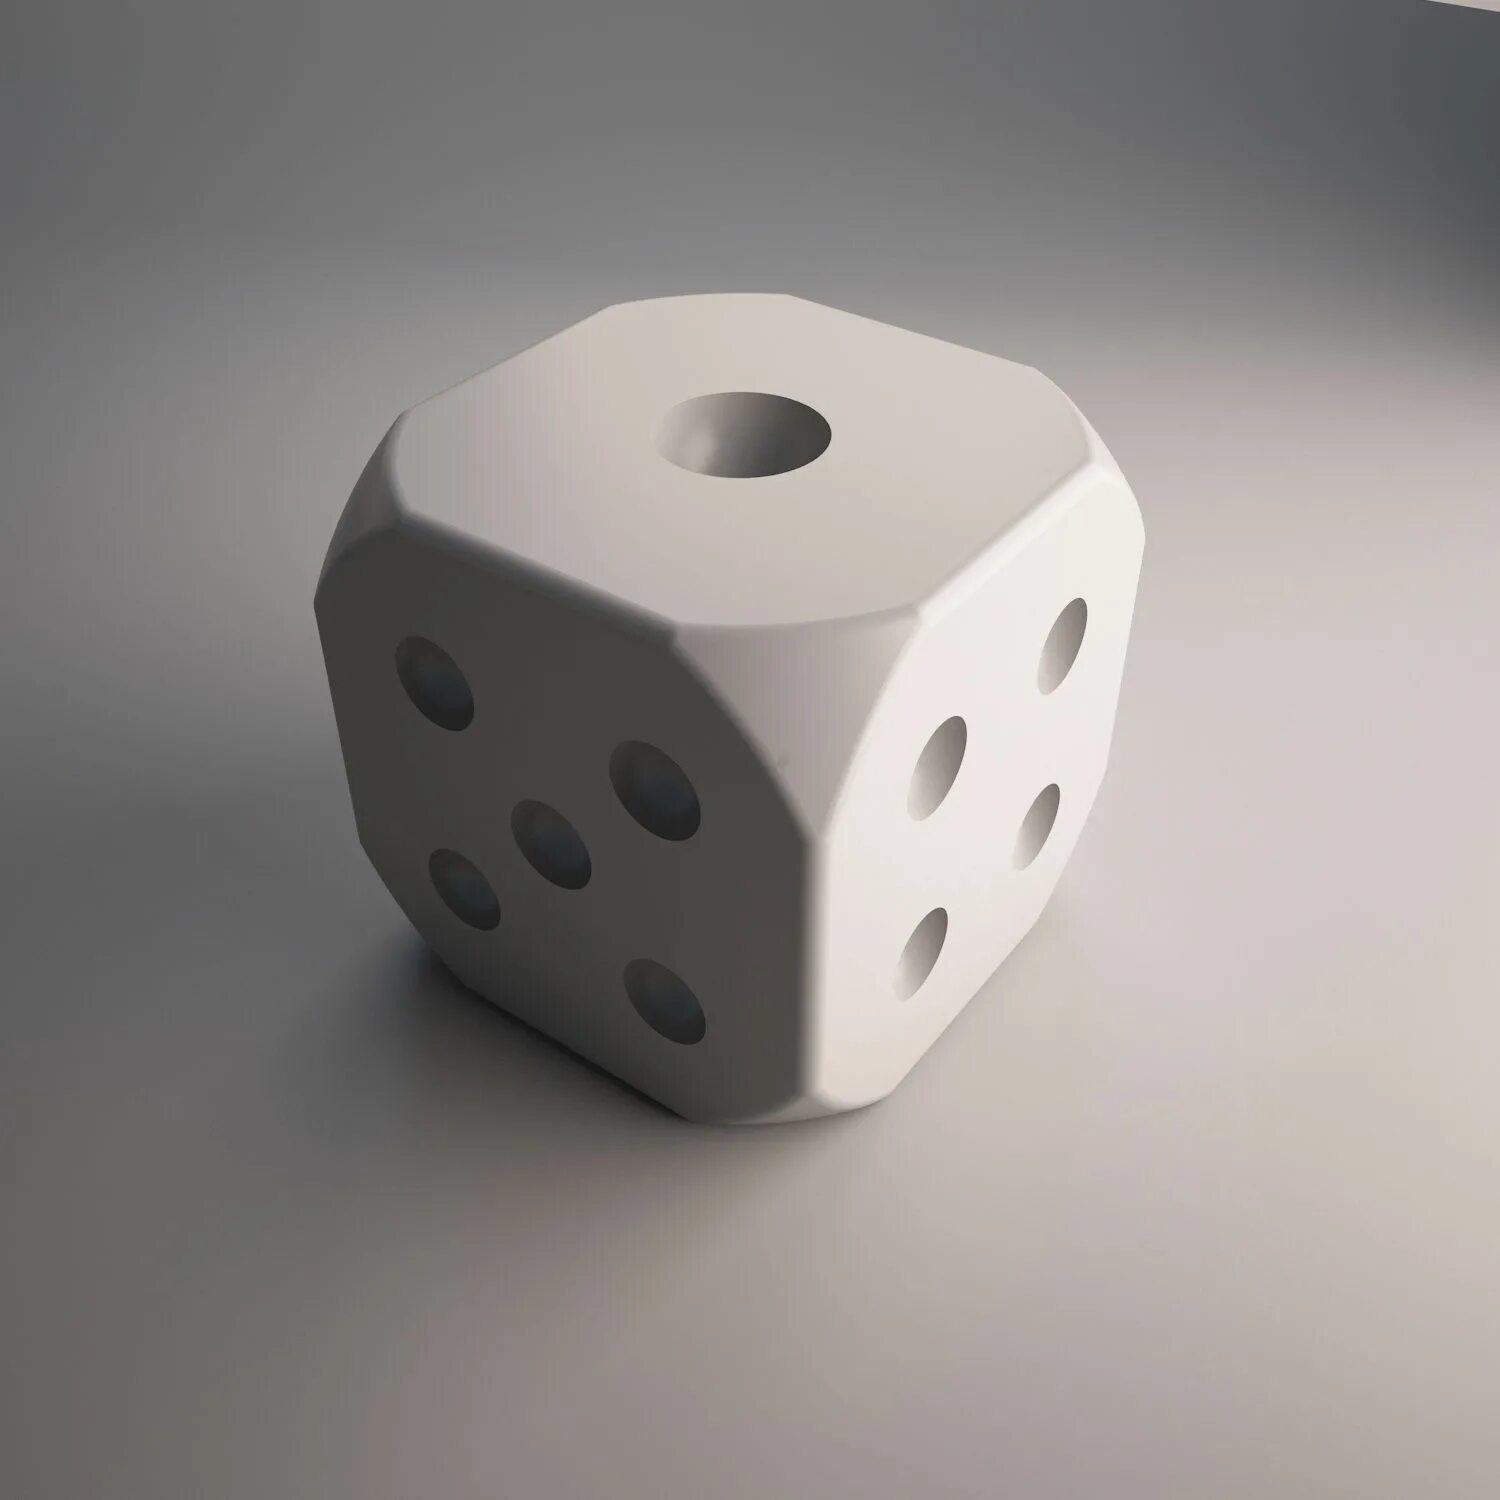 Игральная кость модель для 3d принтера. D3 dice. Игральные кубики STL. Игральный кубик 3д модель. Slice and dice 3.0